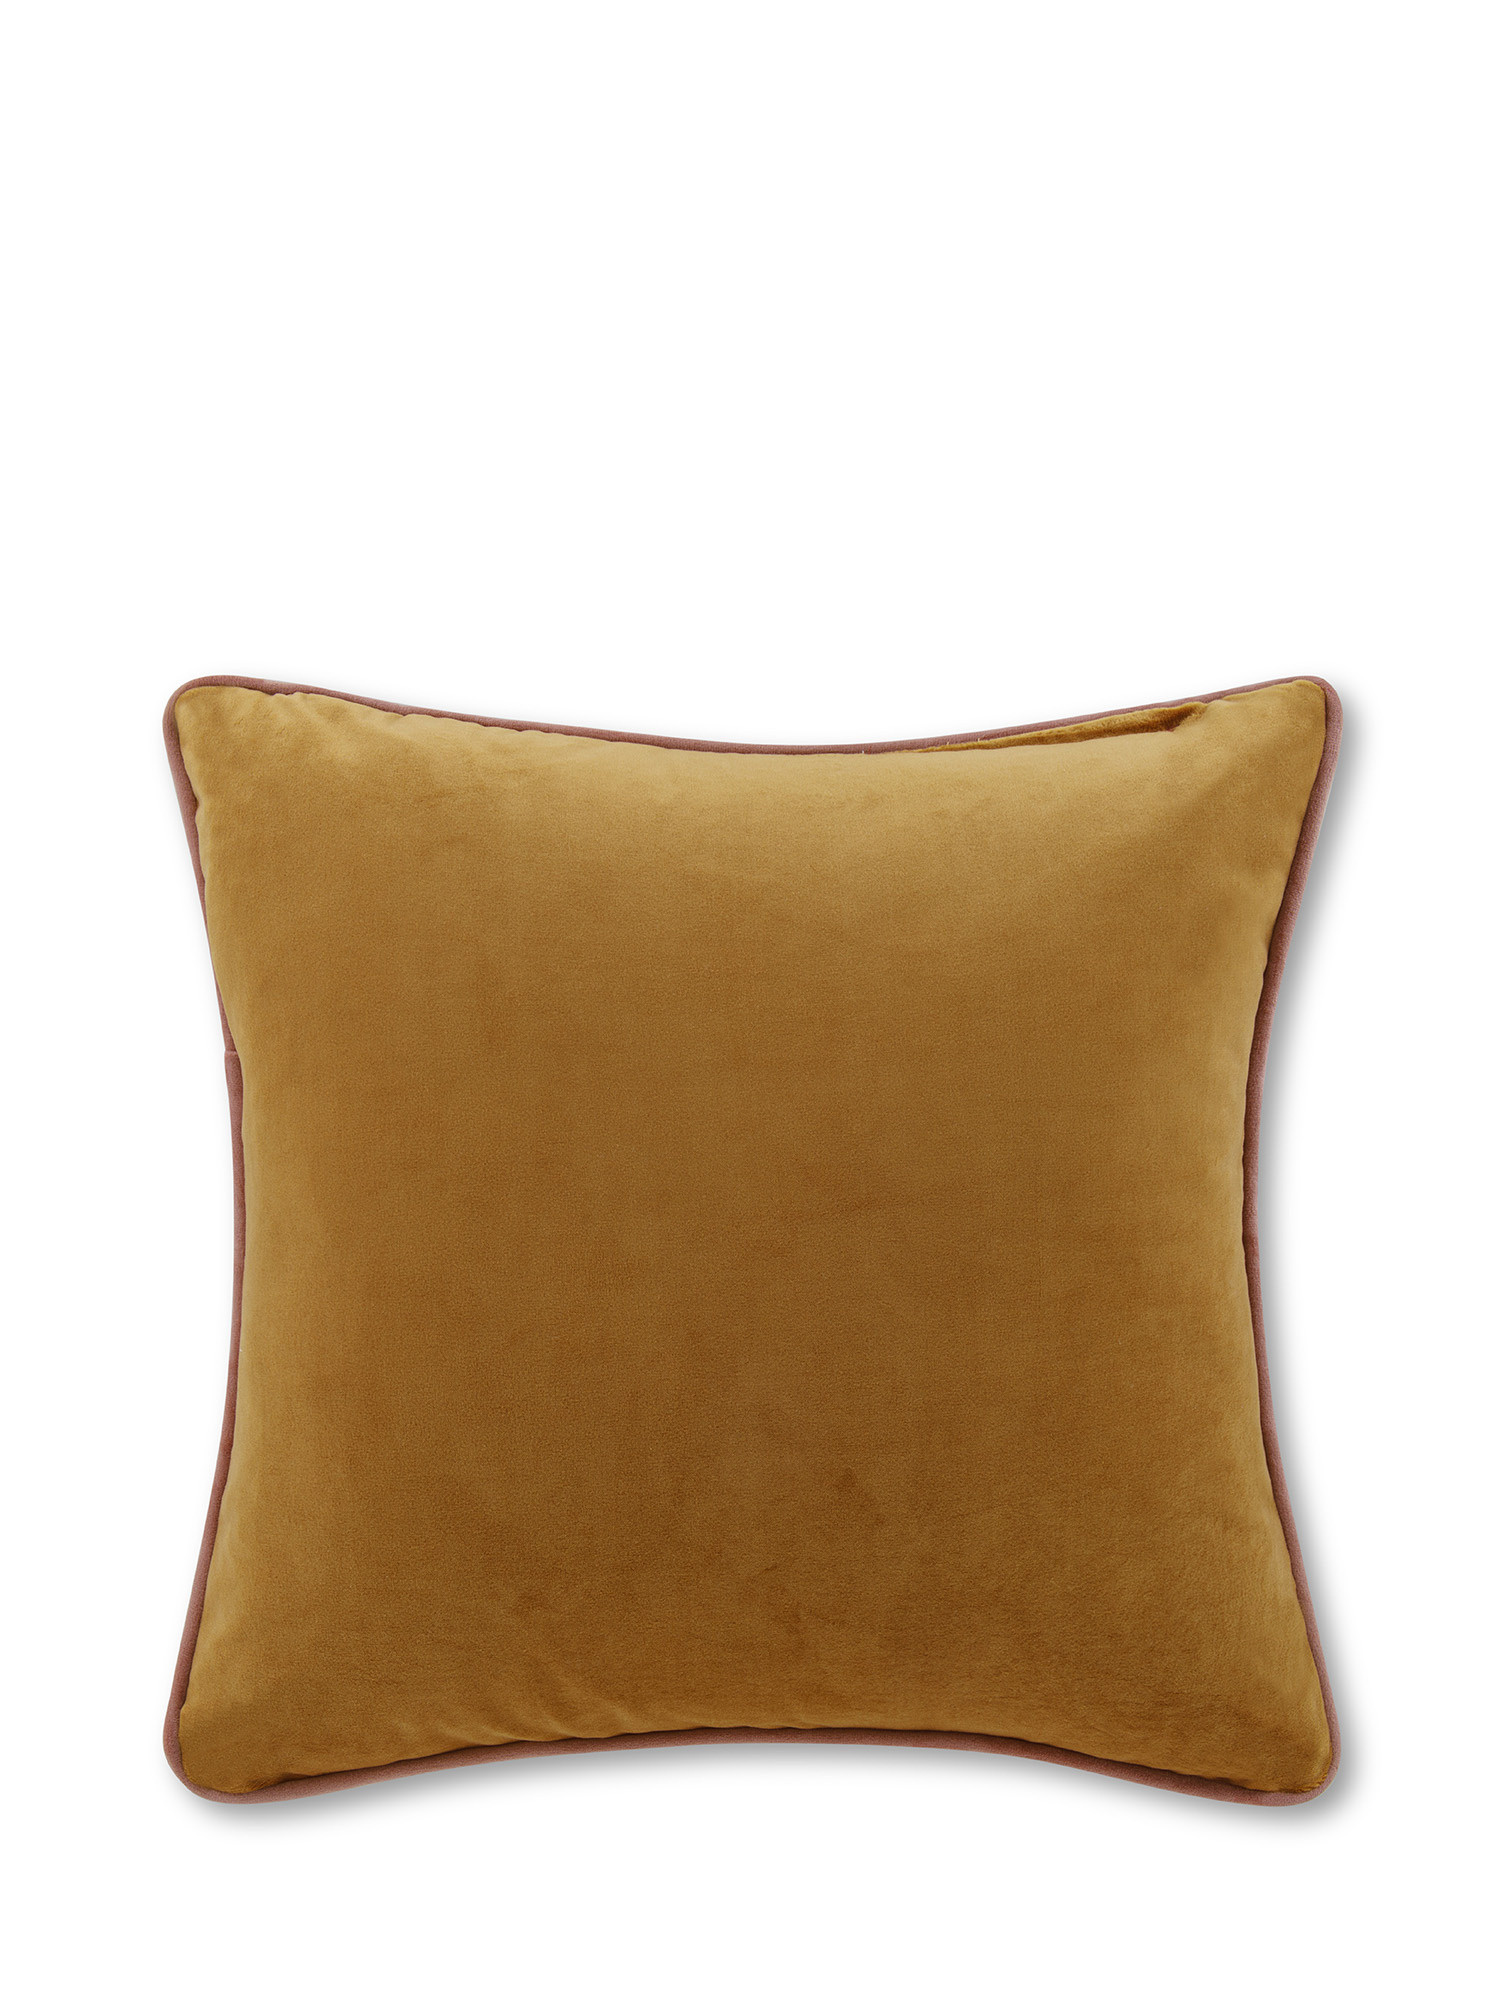 Cuscino in velluto con piping applicato sul bordo 45x45 cm, Giallo senape, large image number 0